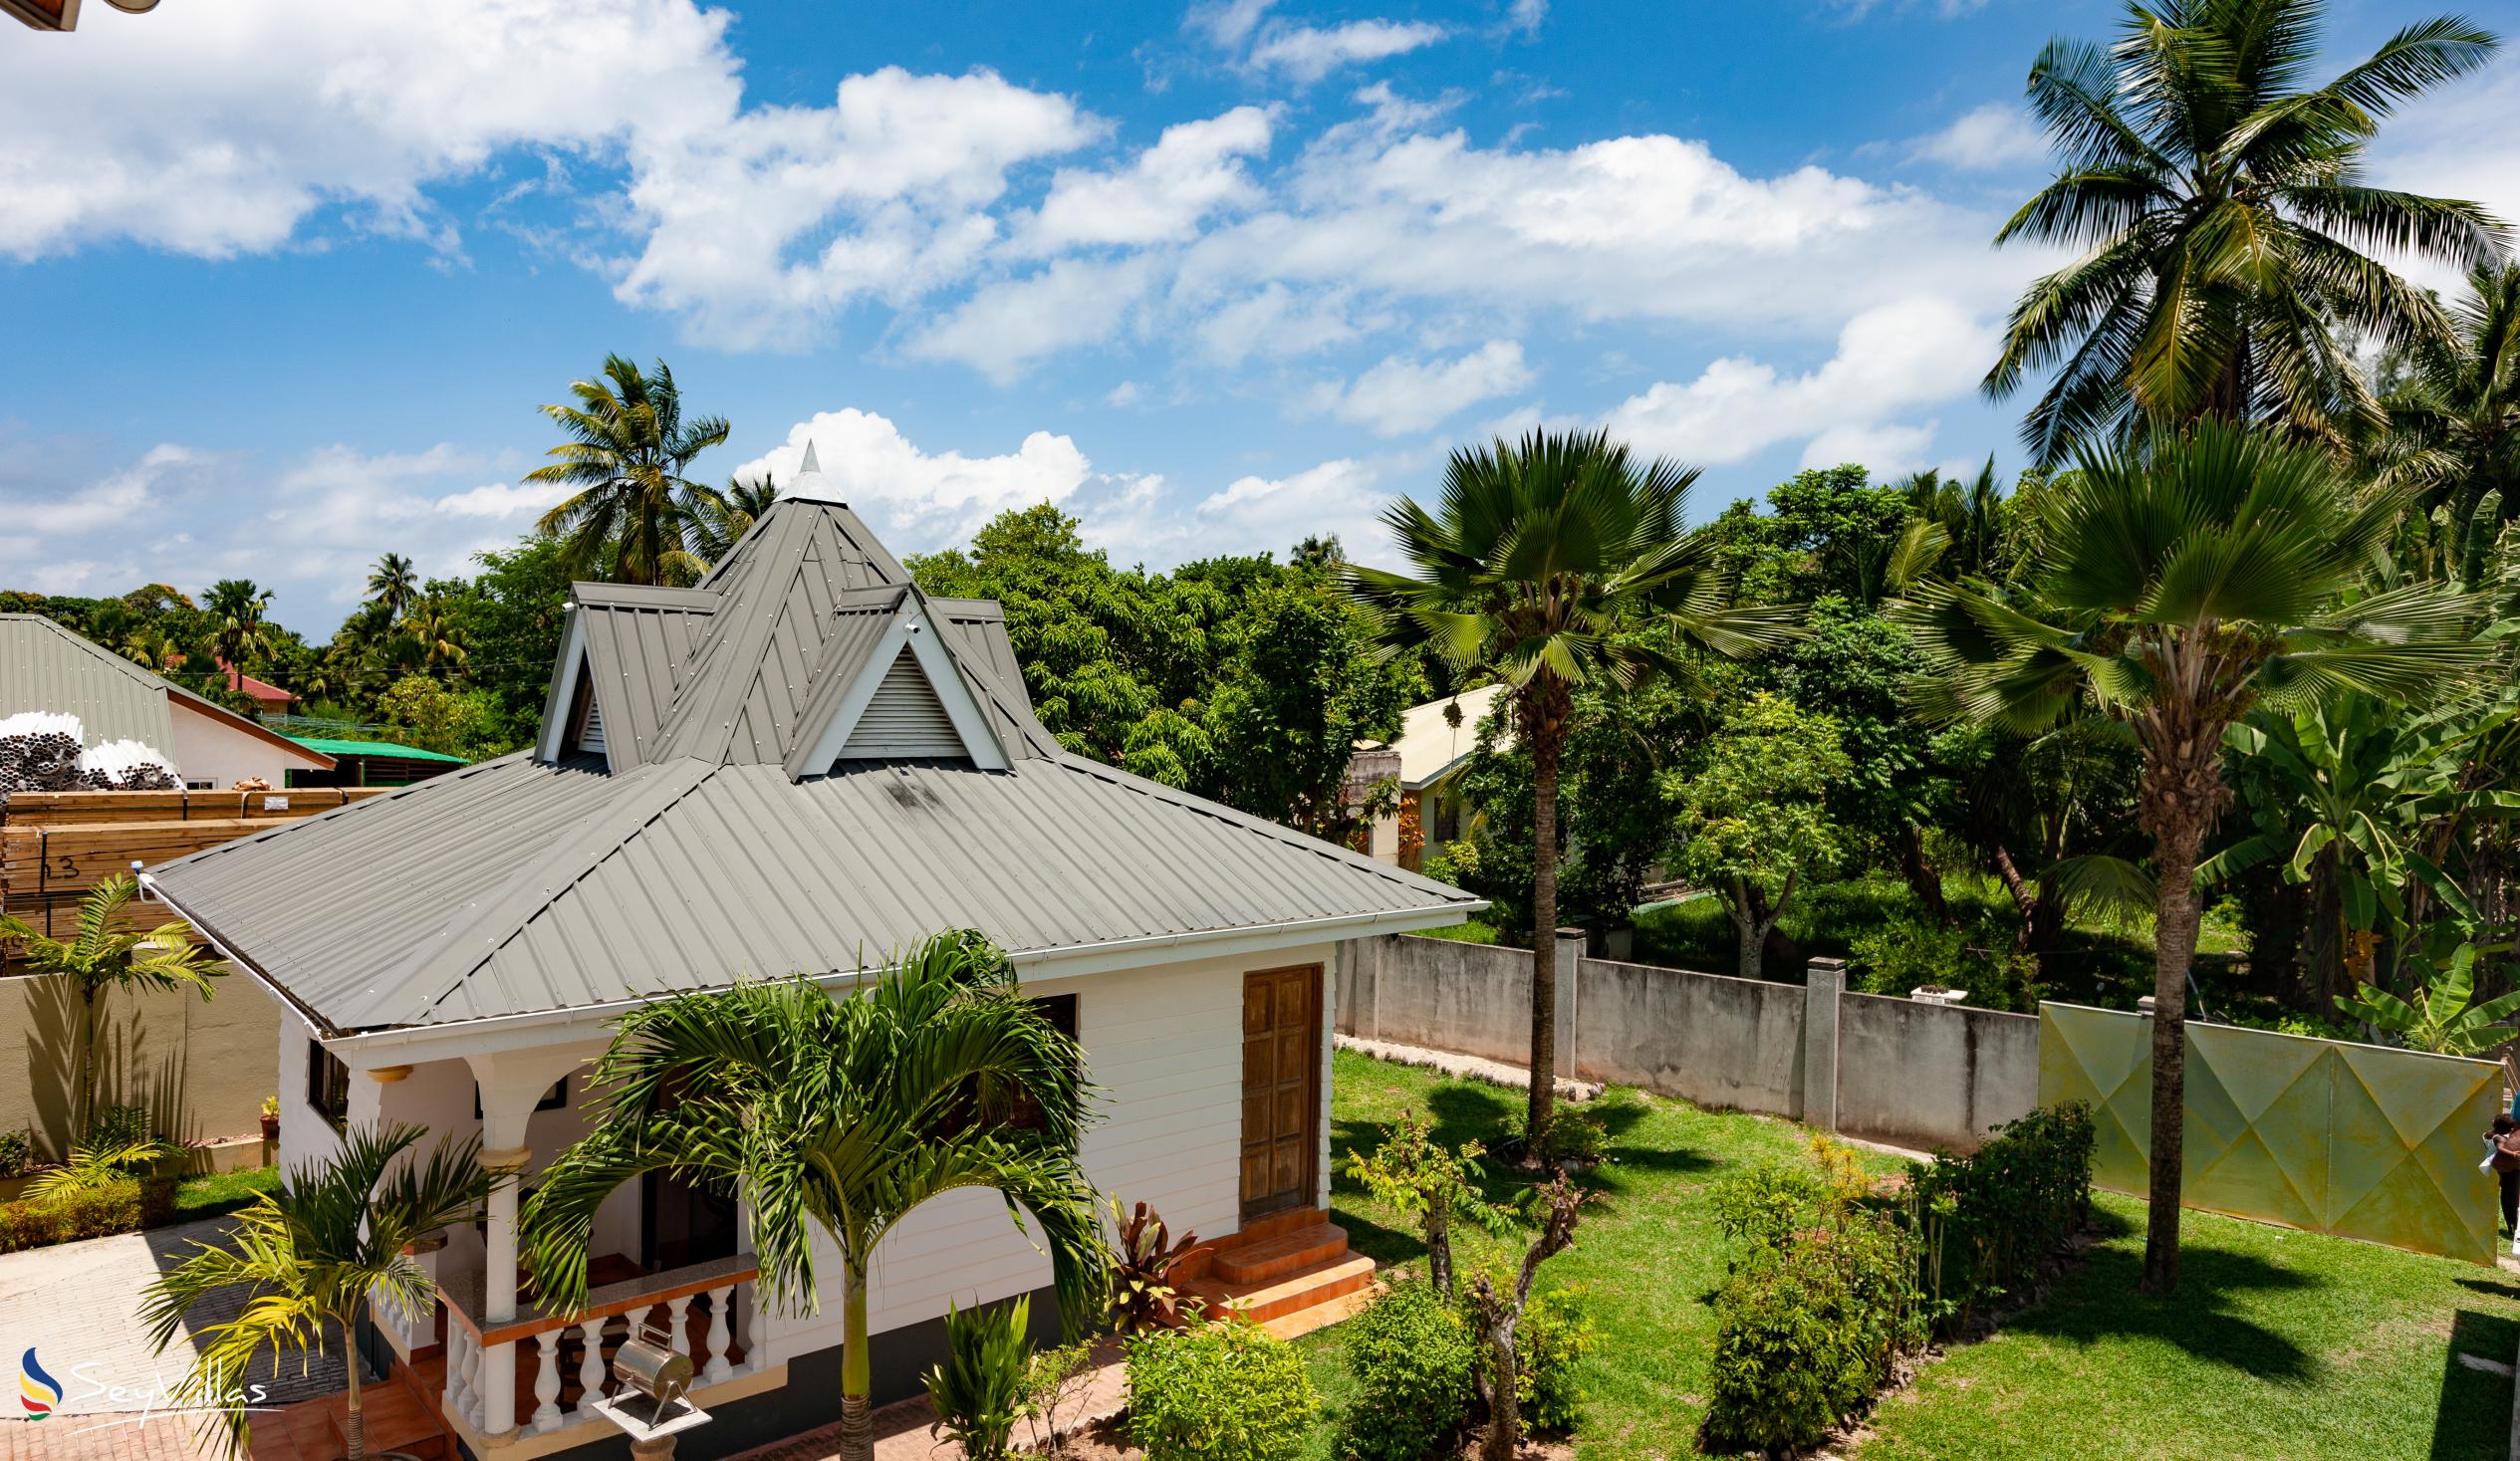 Photo 8: Villa Aya - Outdoor area - Praslin (Seychelles)